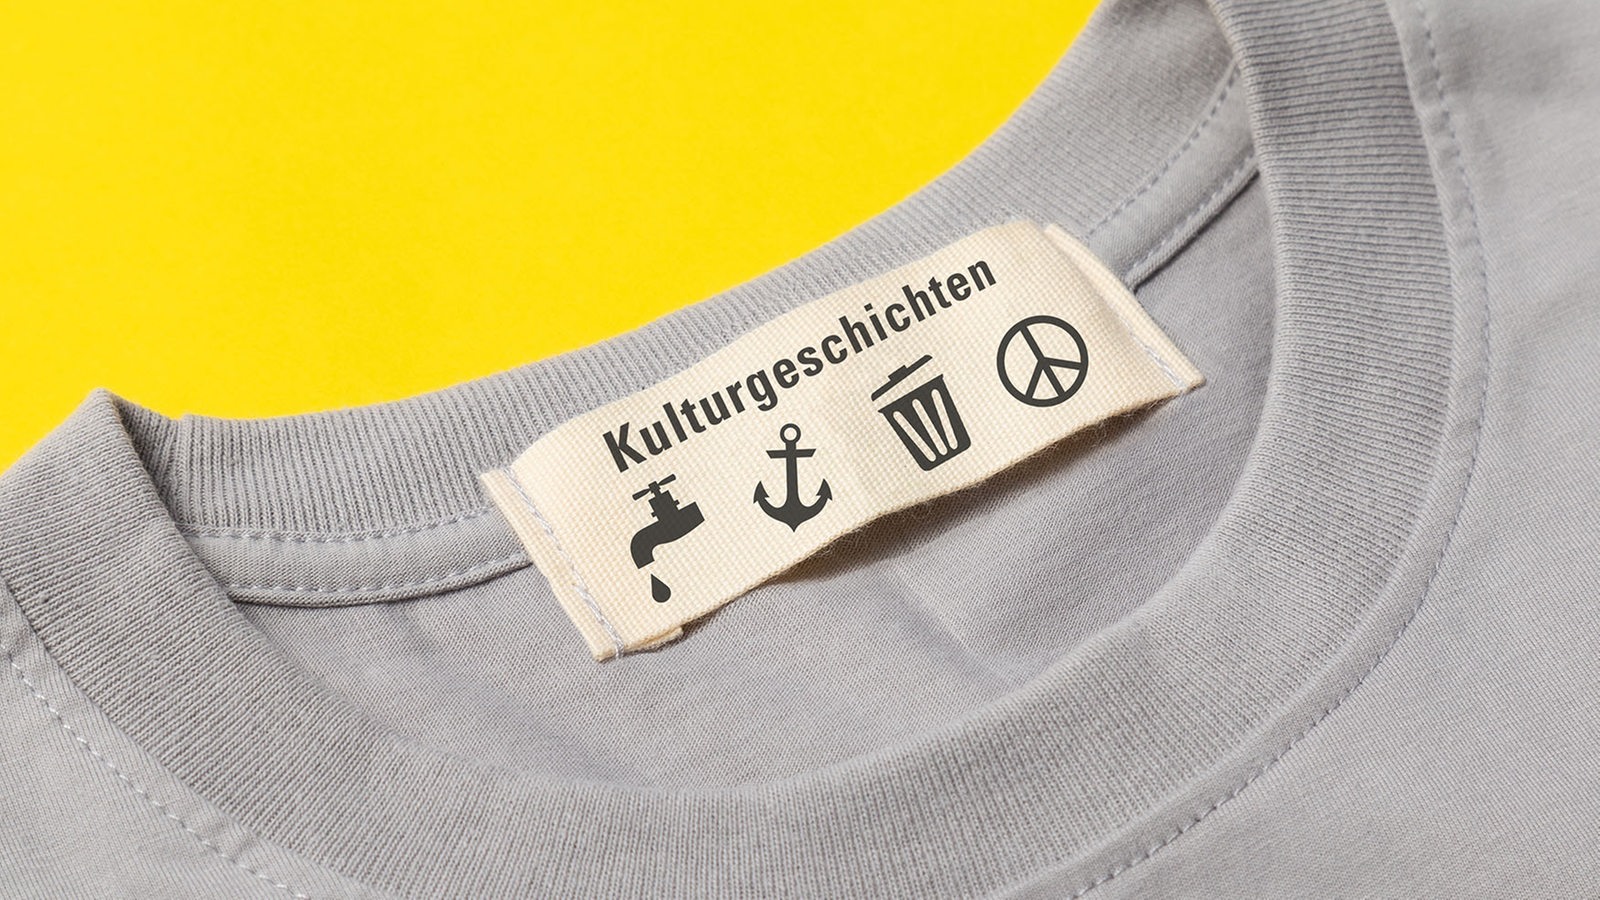 Ein Baumwoll-T-Shirt mit einem Etikett, auf dem das Wort "Kulturgeschichtne" und mehrere Zeichen abgebildet sind (Symbobild)